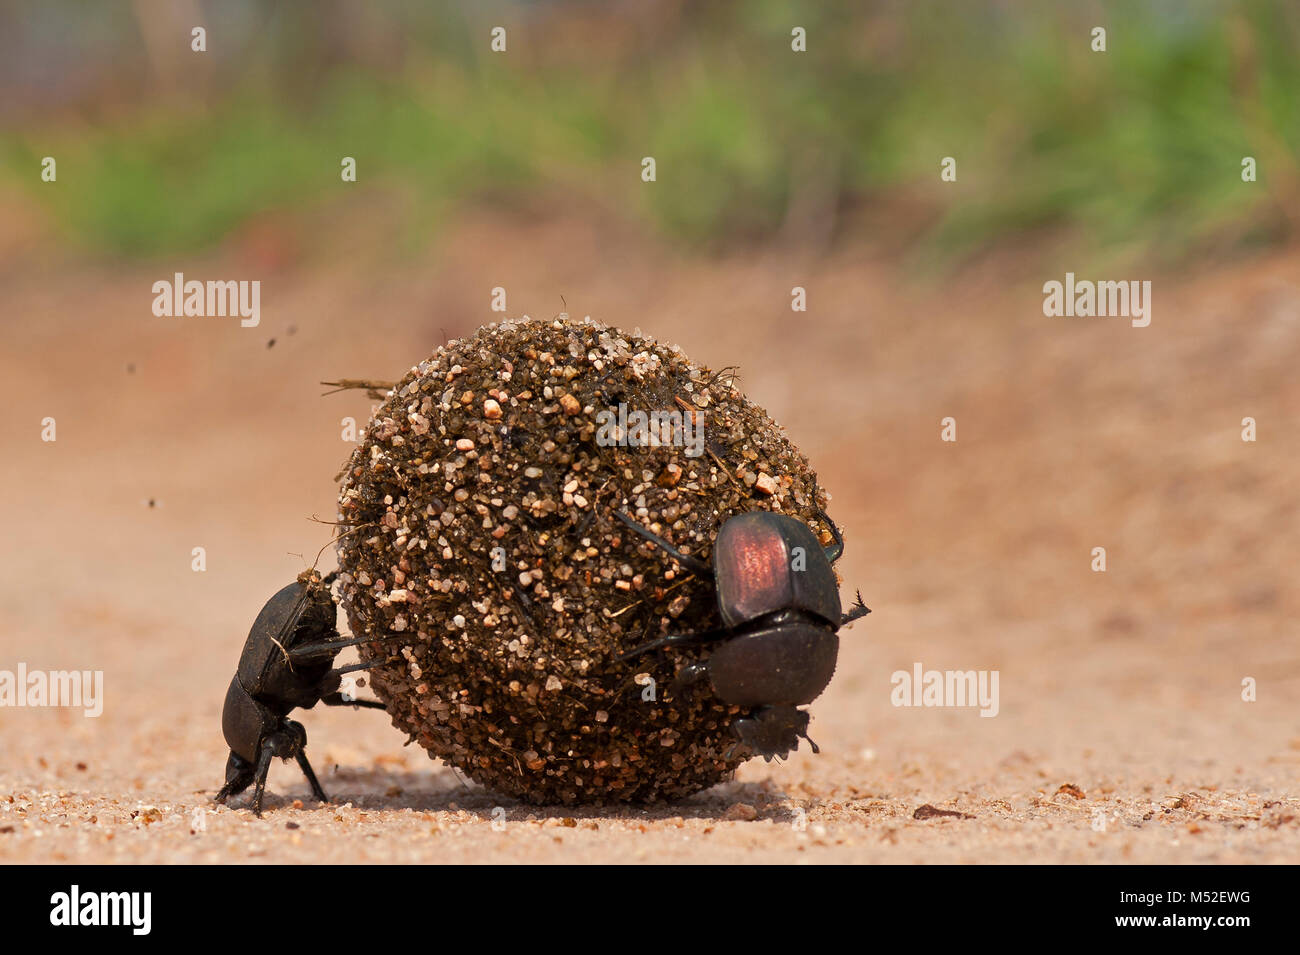 Los escarabajos del estiércol rodar una pelota. Foto de stock